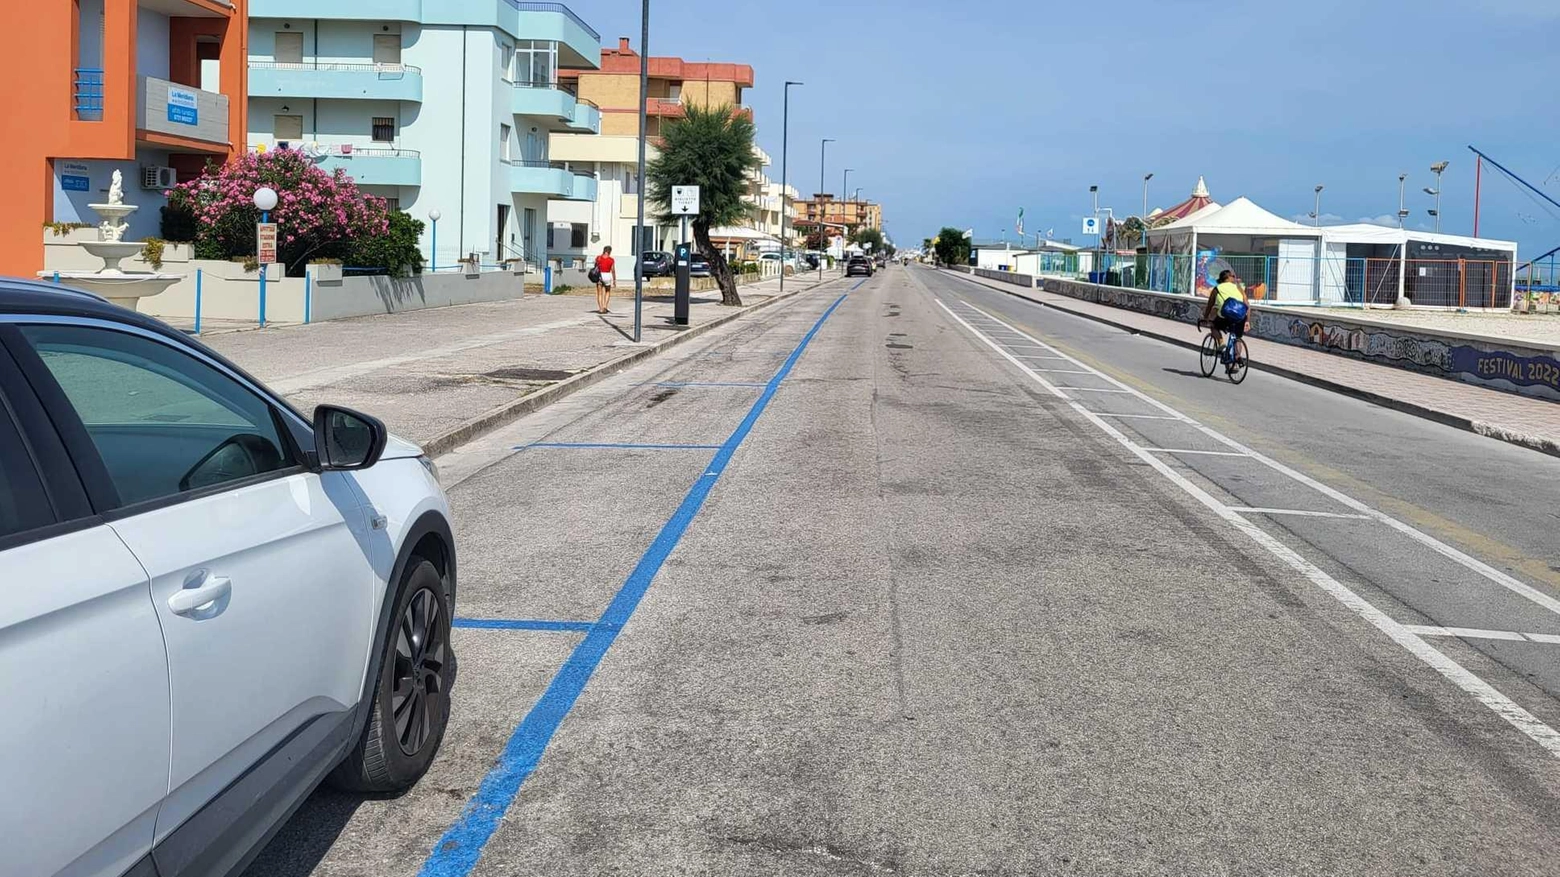 

"Parcheggi blu a Marotta: nessun guadagno e solo danni"